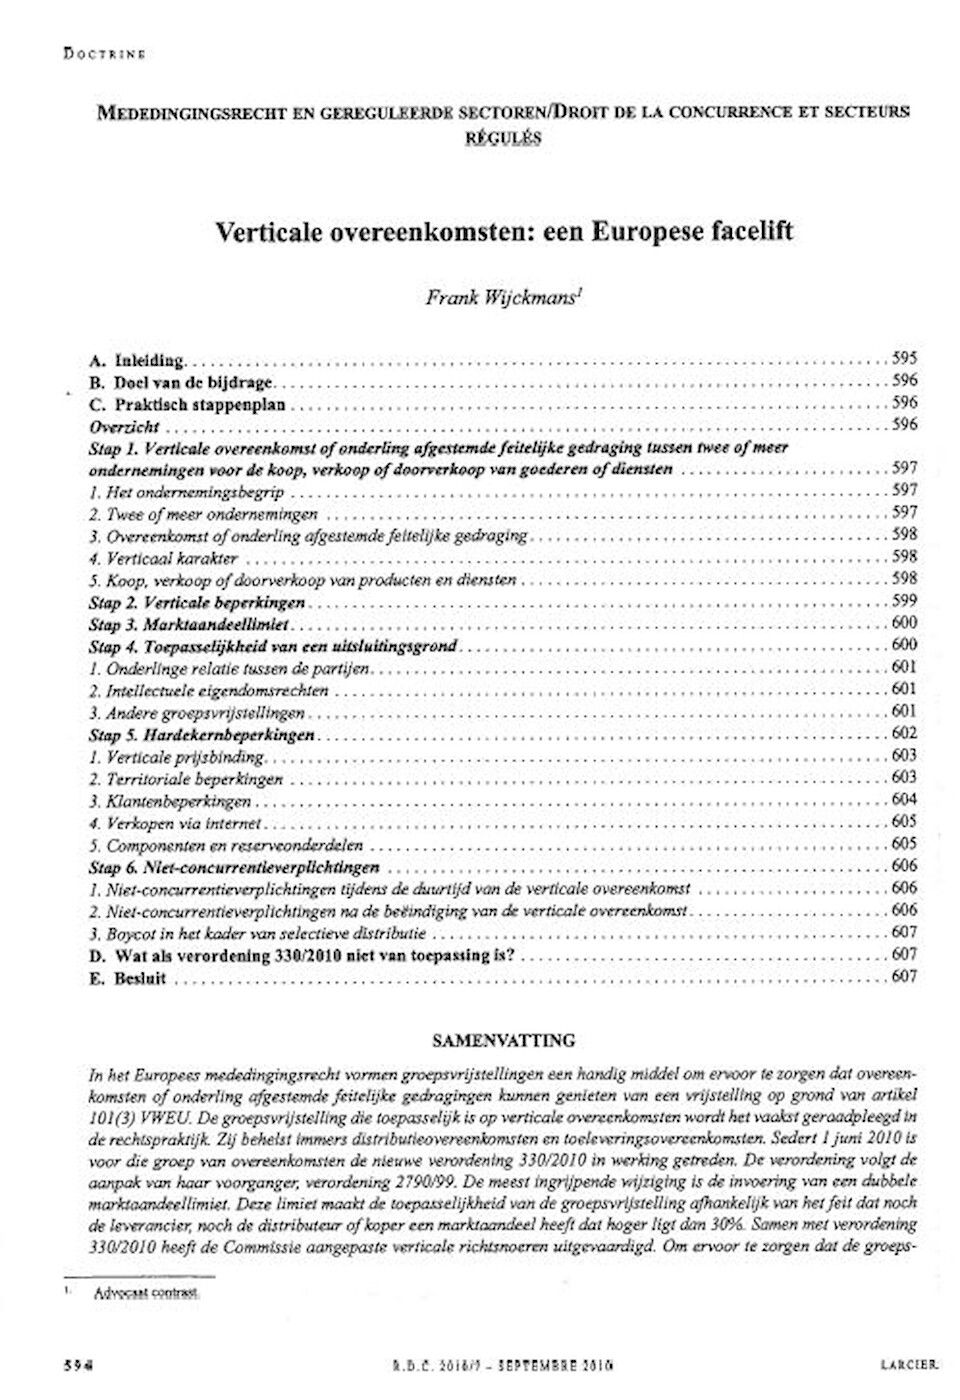 Vertical agreements: a European facelift